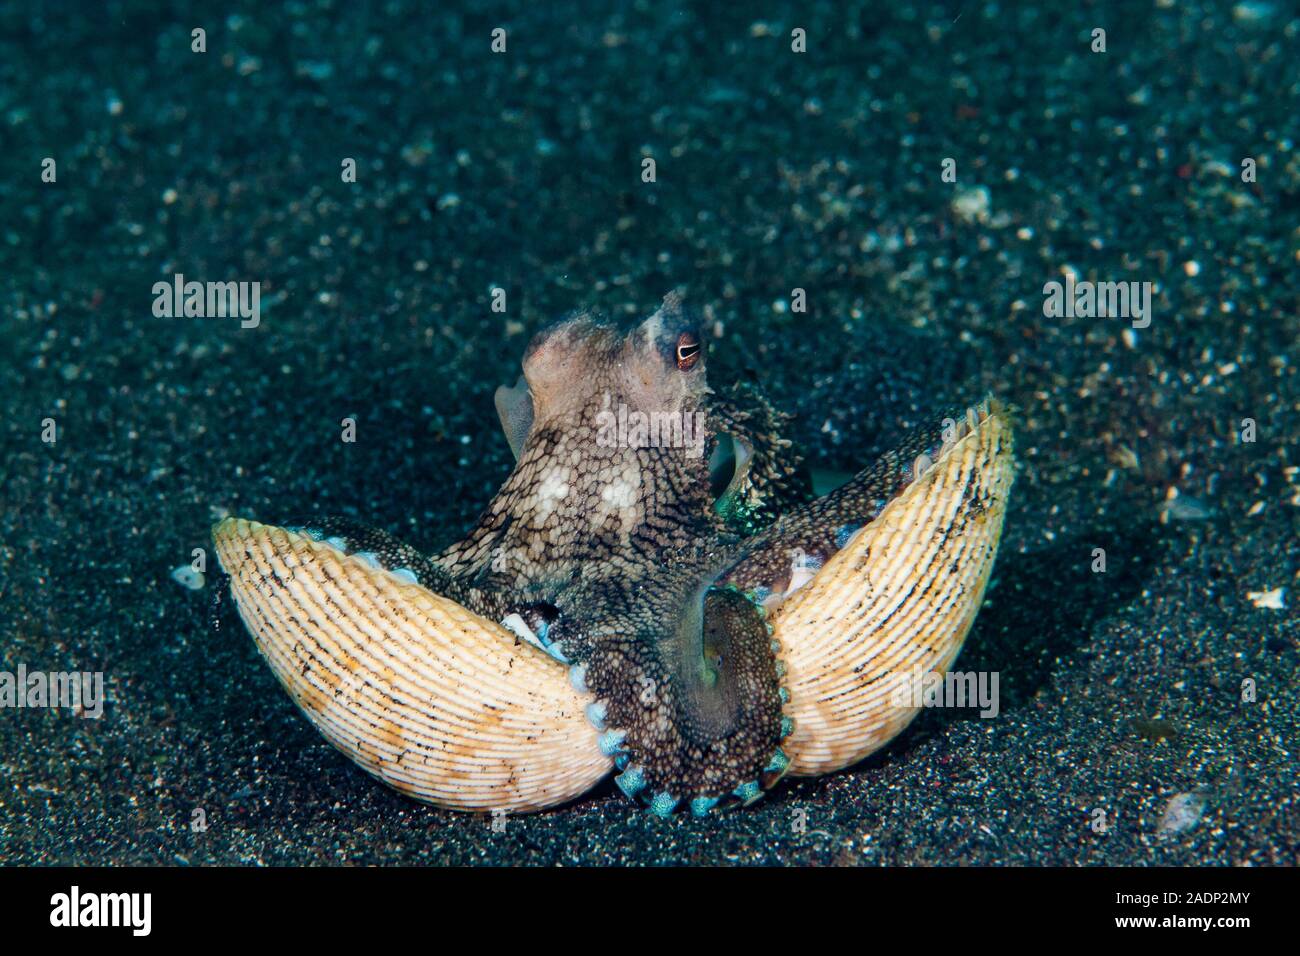 Coconut Octopus Amphioctopus marginatus Stock Photo